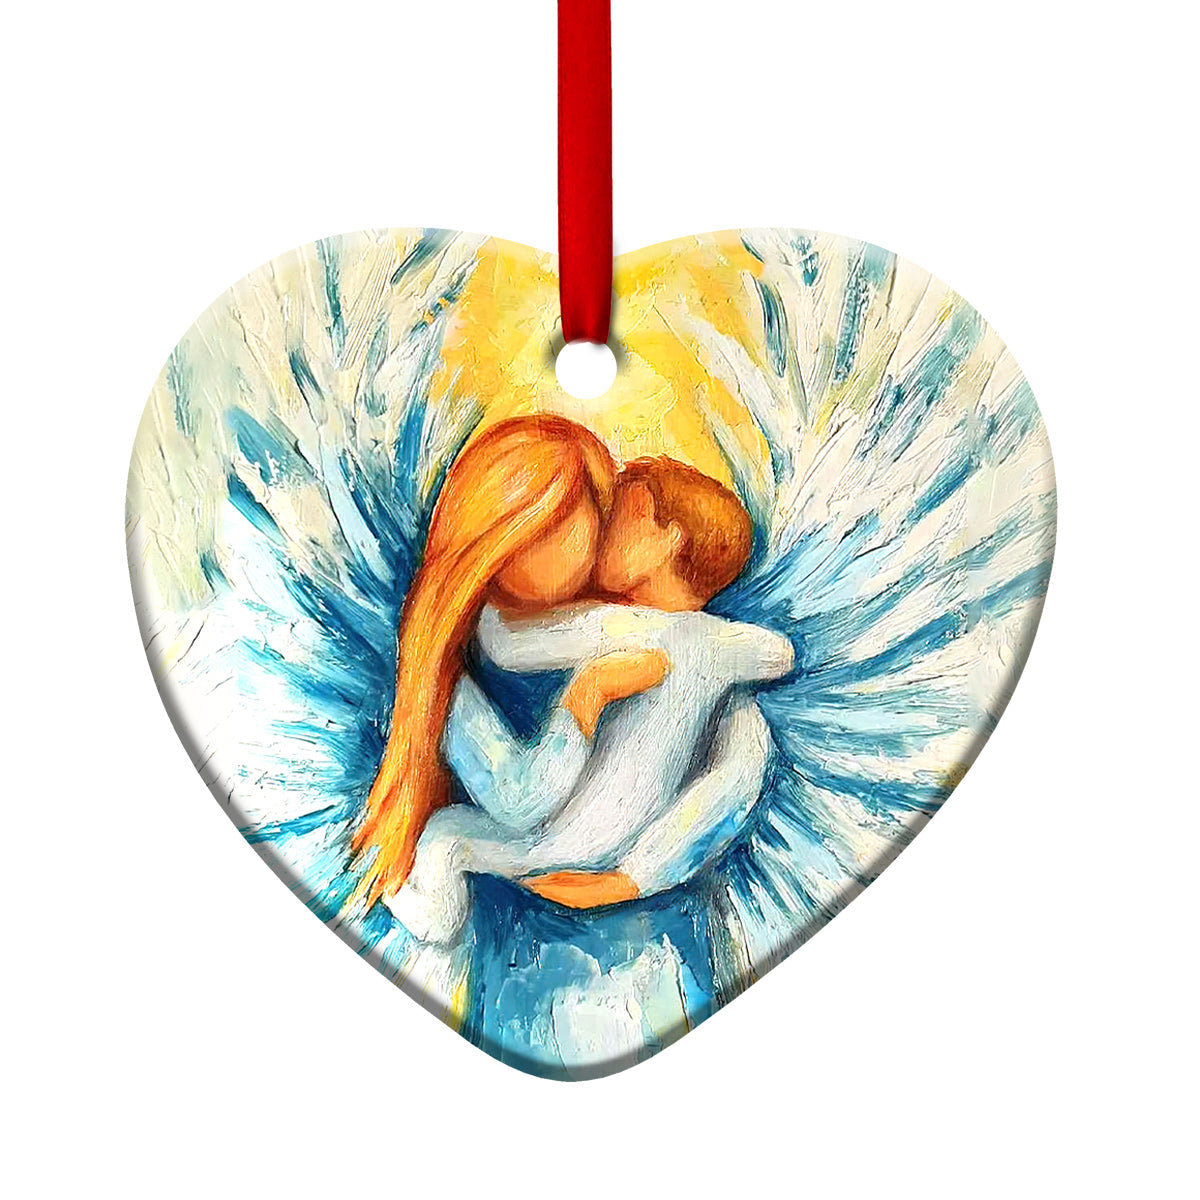 Angel With True Love - Heart Ornament - Owls Matrix LTD